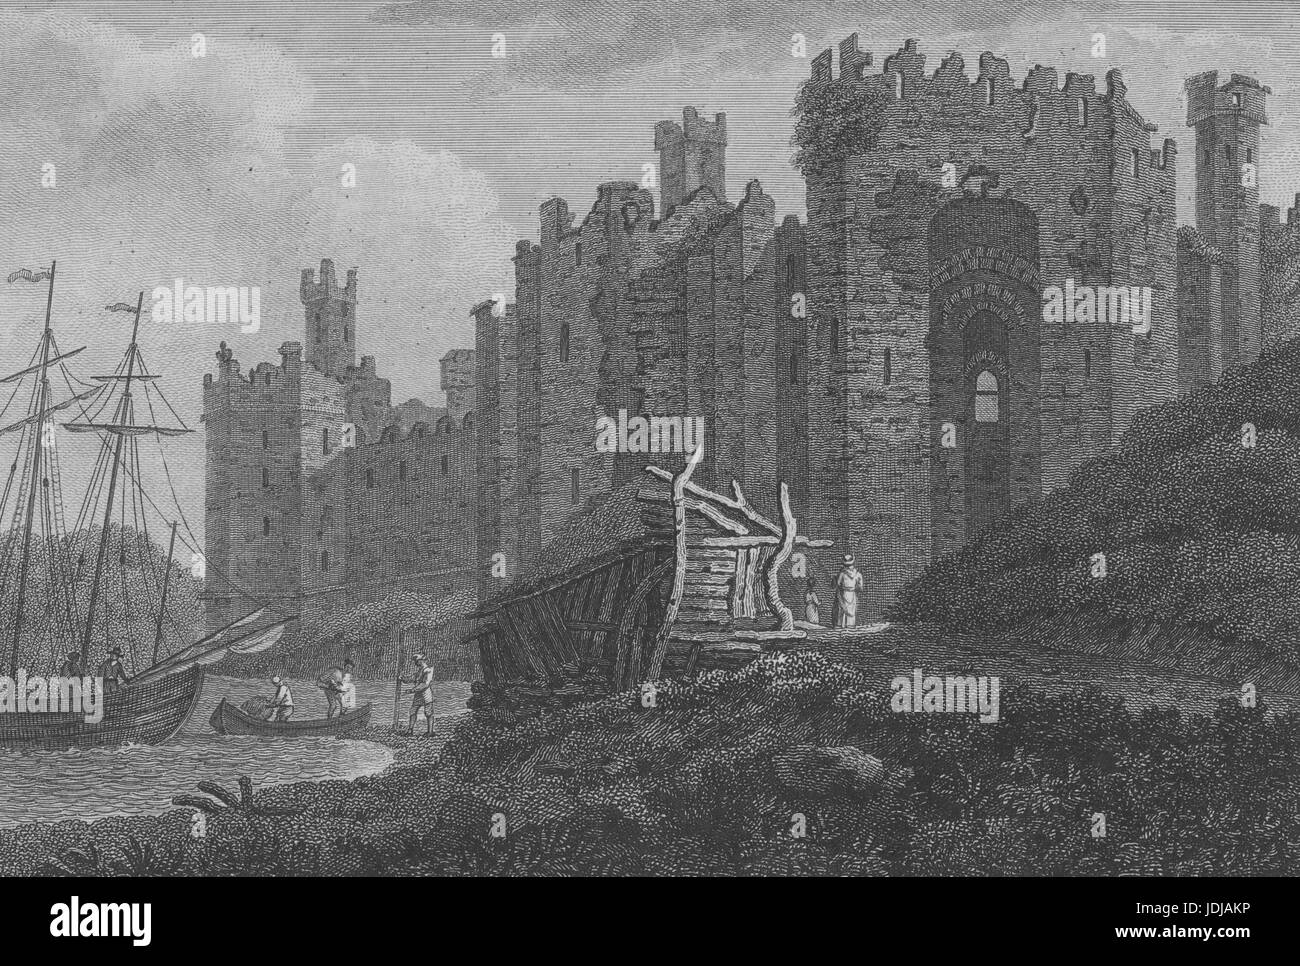 Gravure de l'extérieur du Château de Caernarfon, forteresse médiévale de la ville de Caernarfon, Pays de Galles, 1800. À partir de la Bibliothèque publique de New York. Banque D'Images